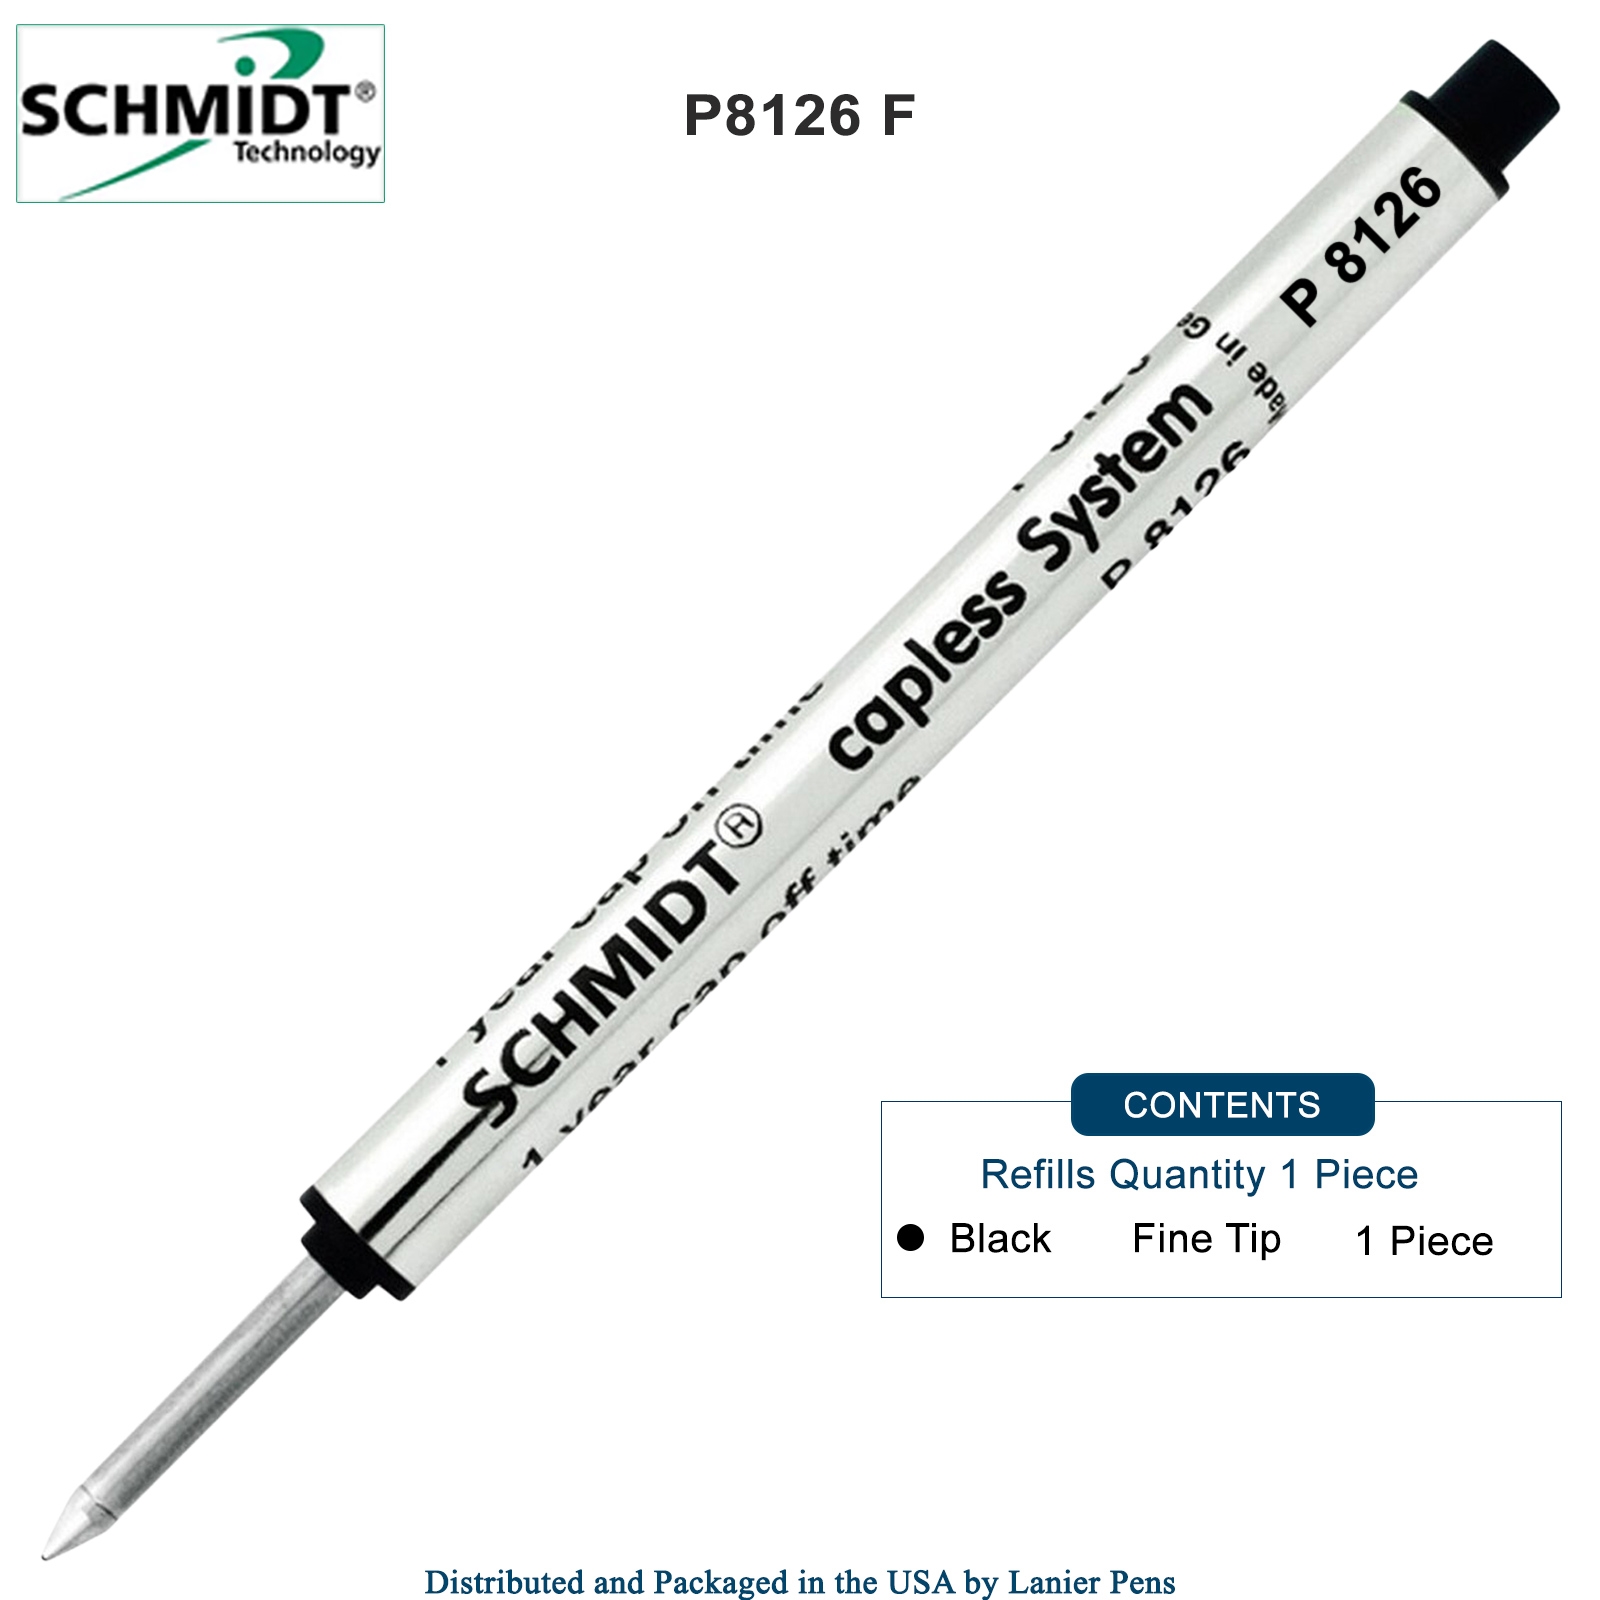 Schmidt P8126 Capless Rollerball - Black Ink